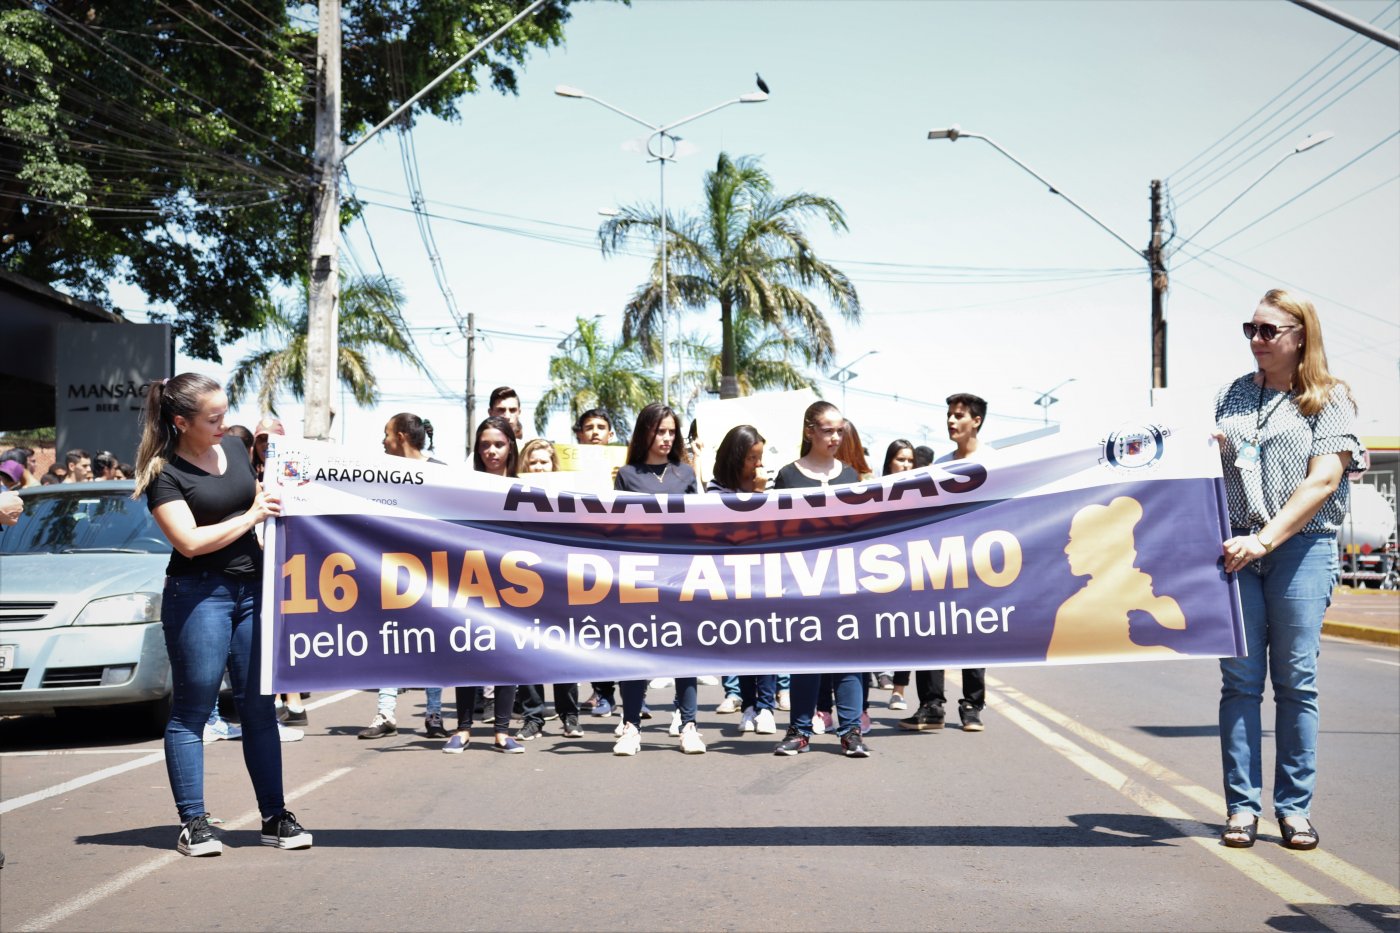 Arapongas inicia a campanha “16 dias de ativismo pelo fim da violência contra as mulheres”